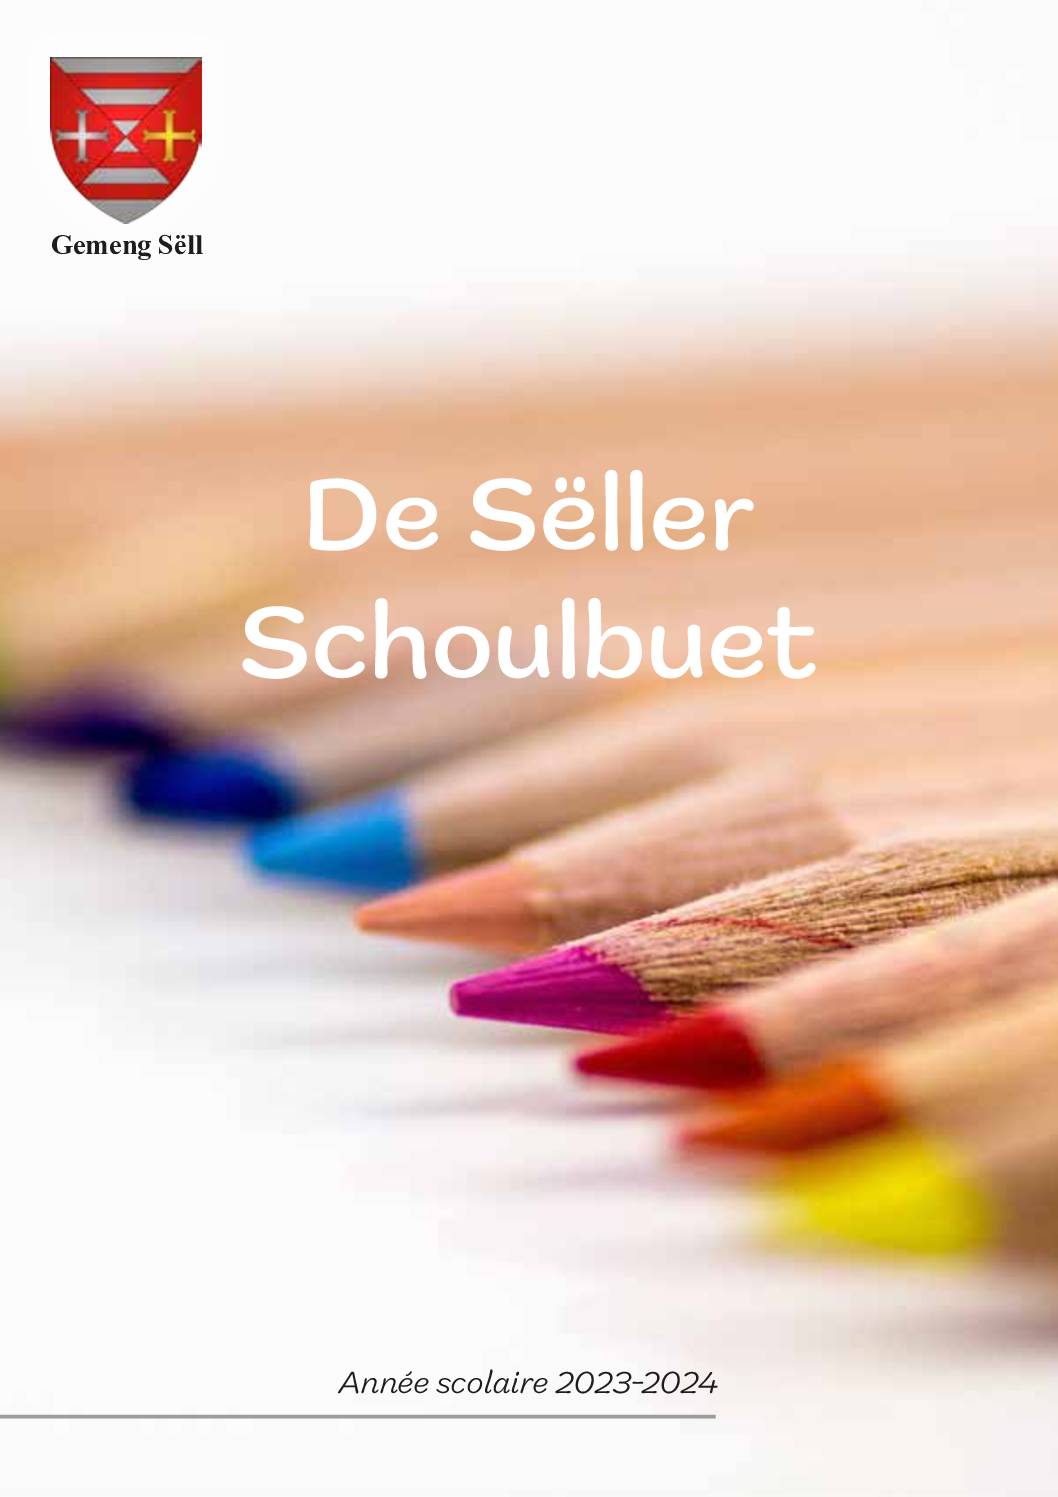 De Sëller Schoulbuet 2023-2024